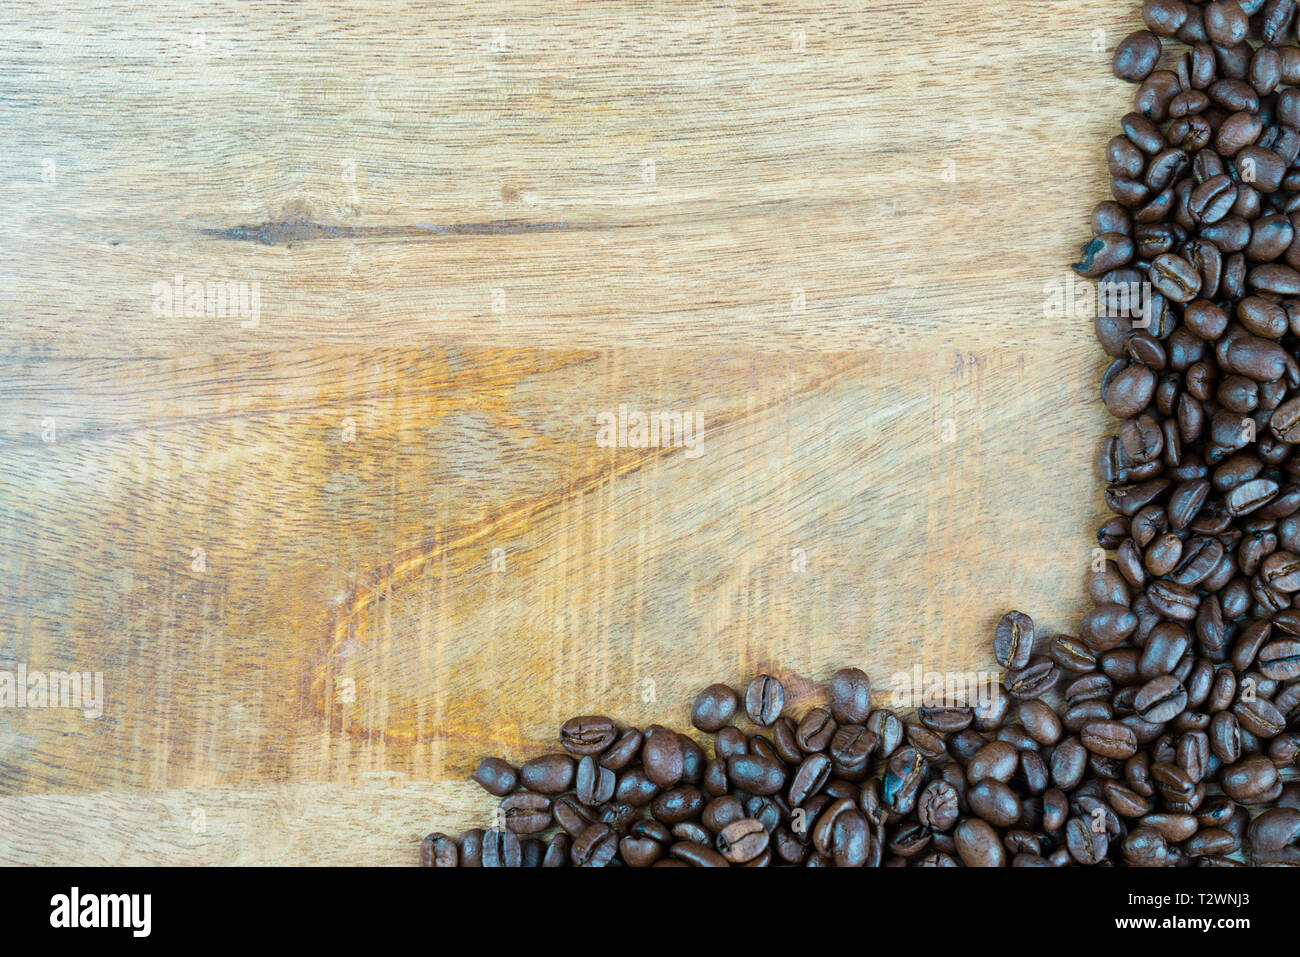 Des grains de café frais sur une texture en bois, la table peut être utilisé comme arrière-plan. Avec l'espace adjacent pour le texte Banque D'Images